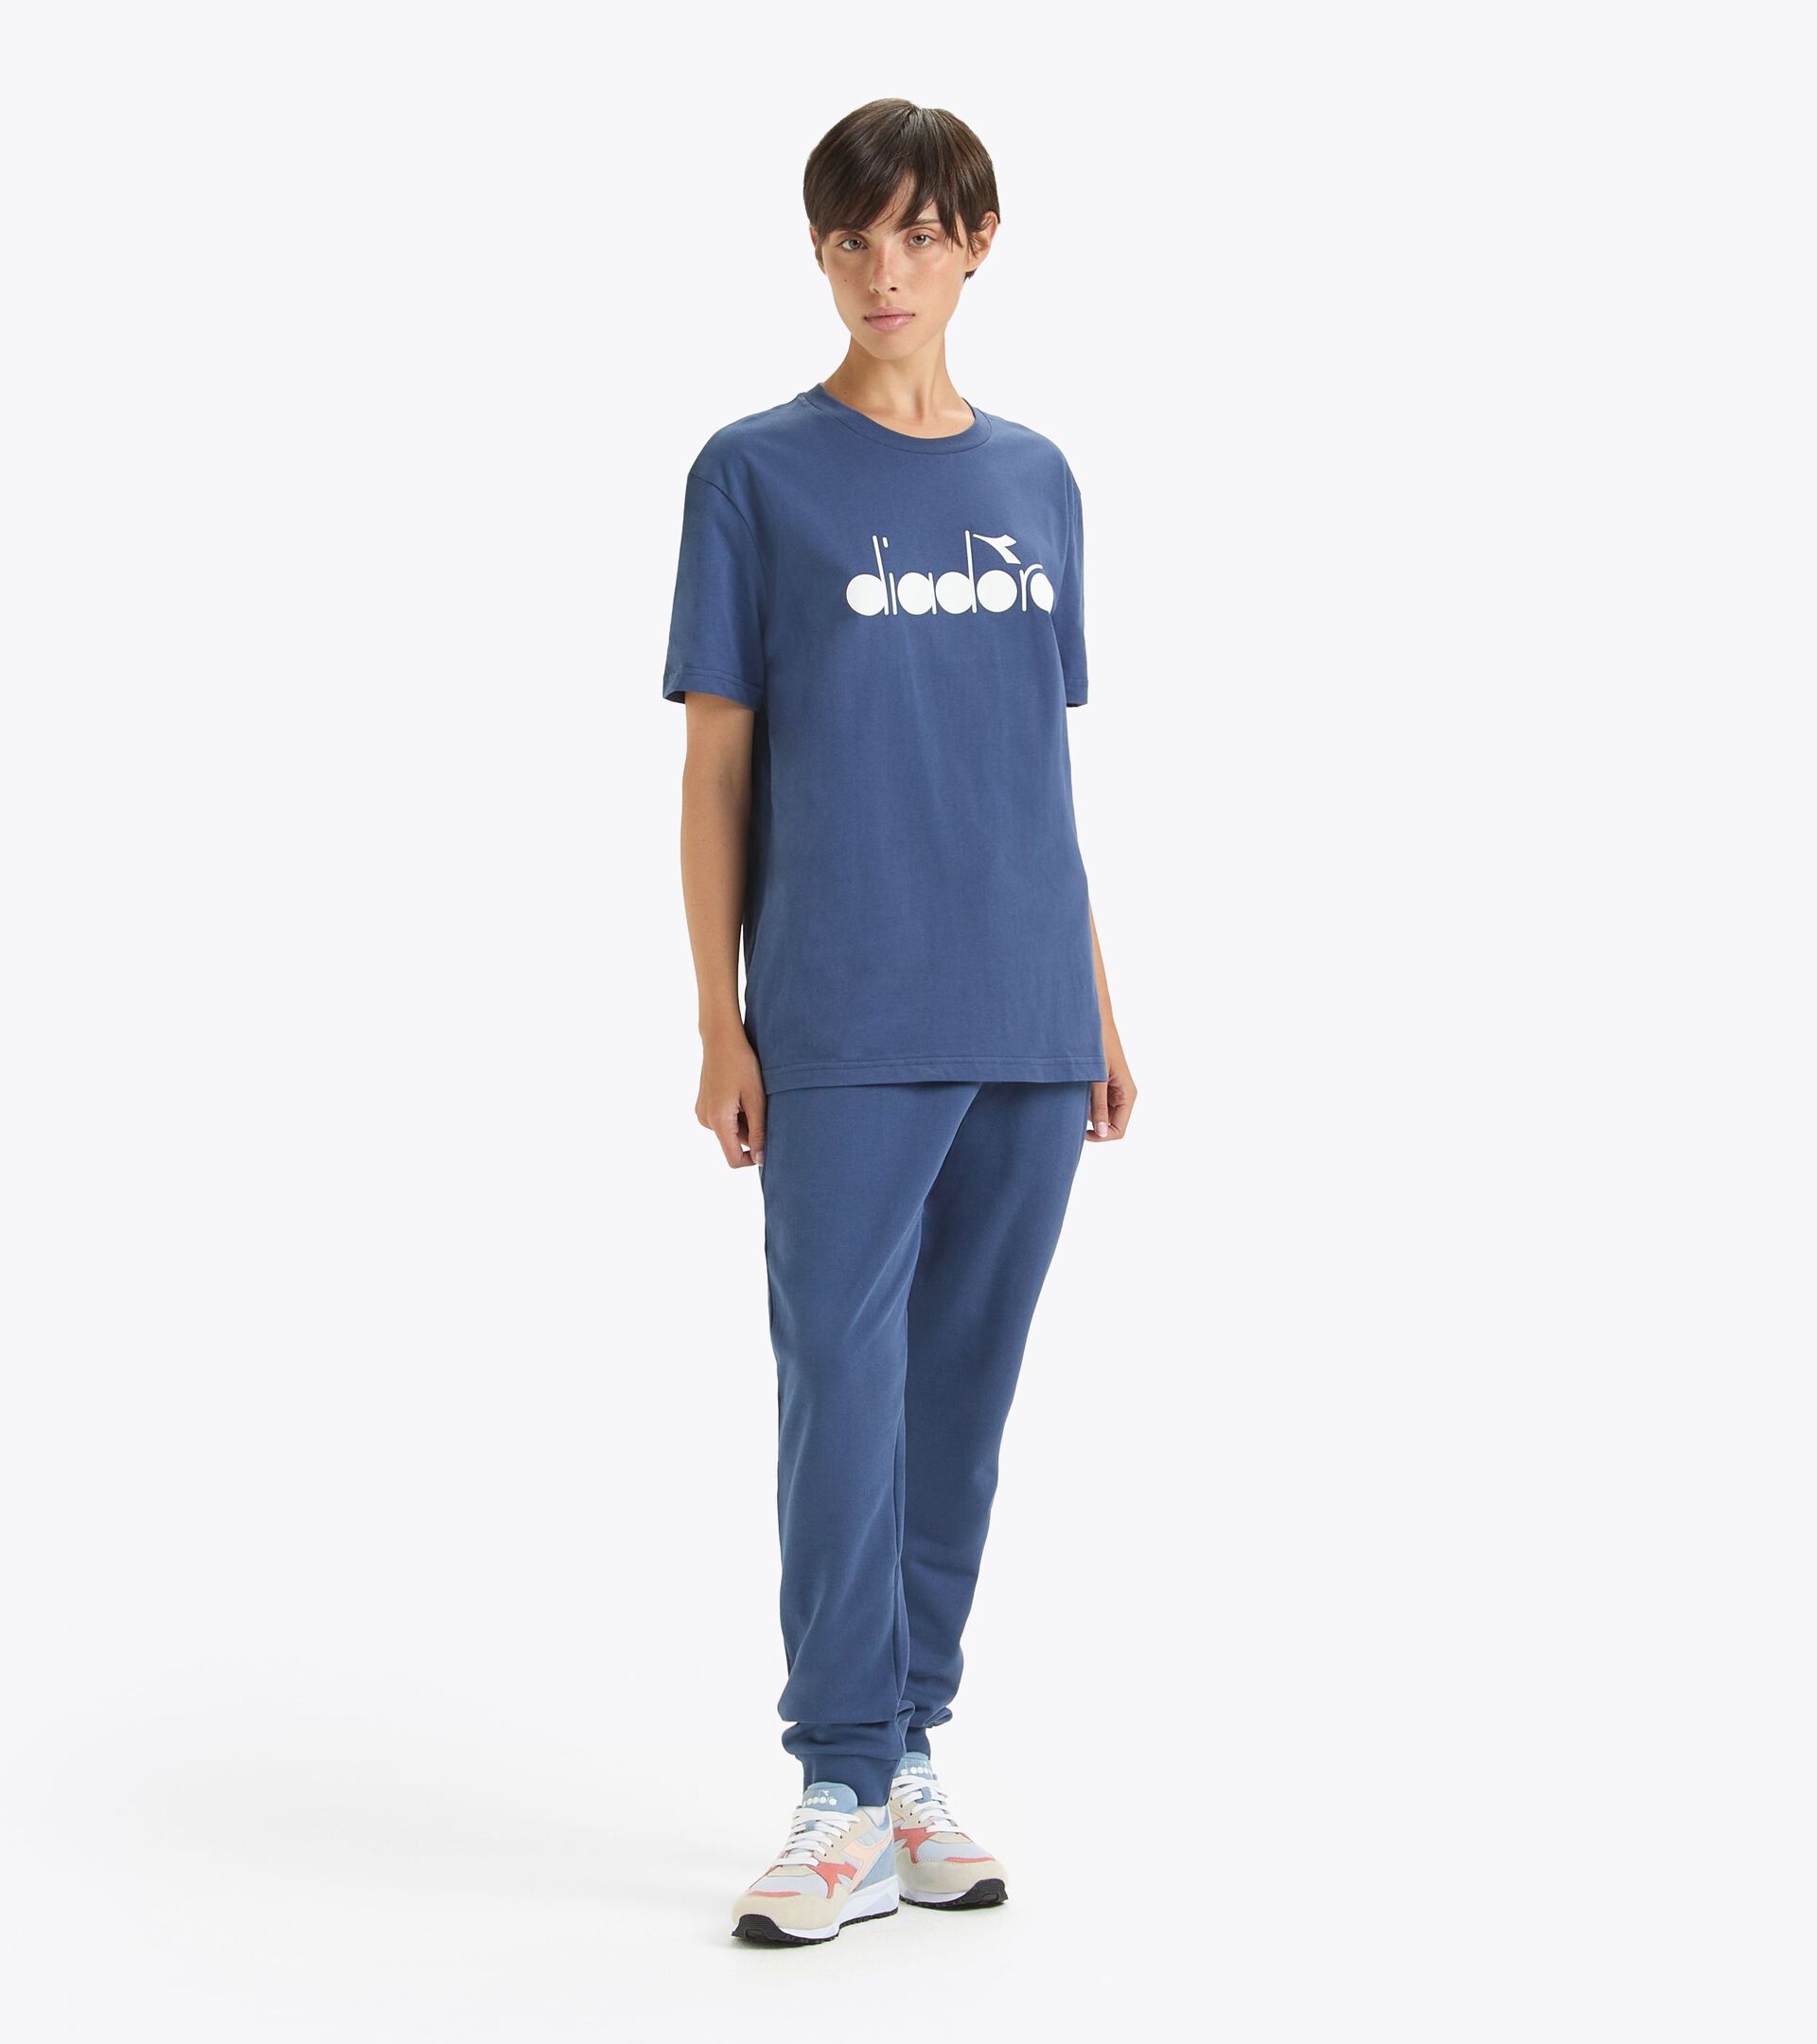 T-shirt - Made in Italy - Gender Neutral  T-SHIRT SS LOGO BLU OCEANA - Diadora